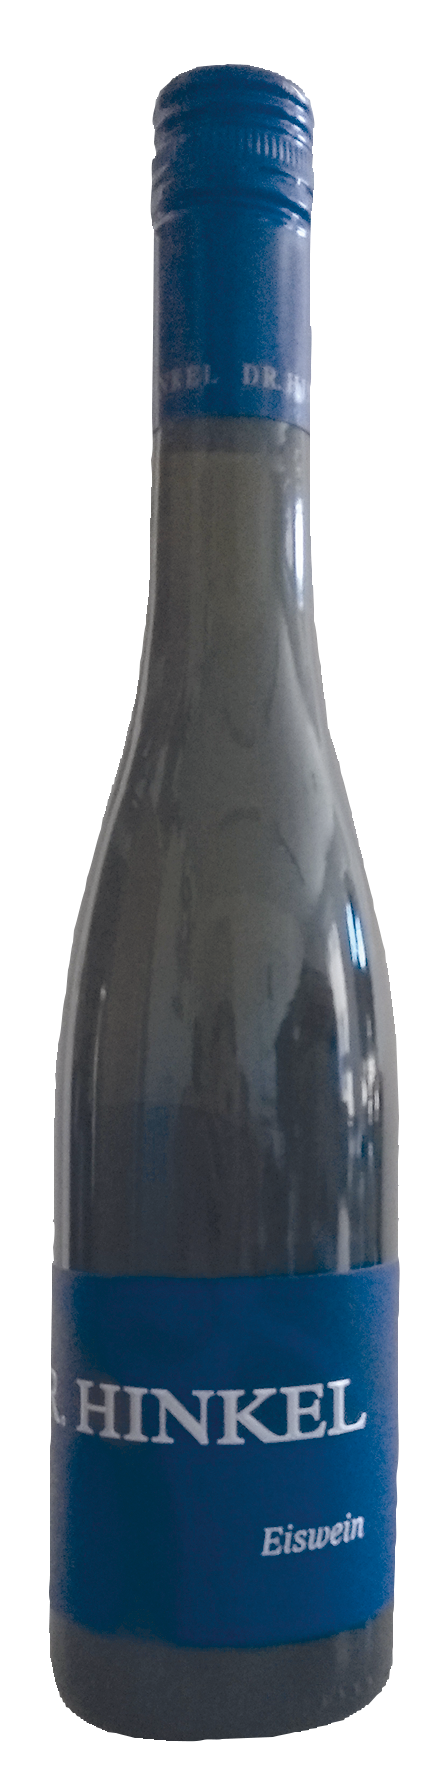 Chardonnay Eiswein - 2016